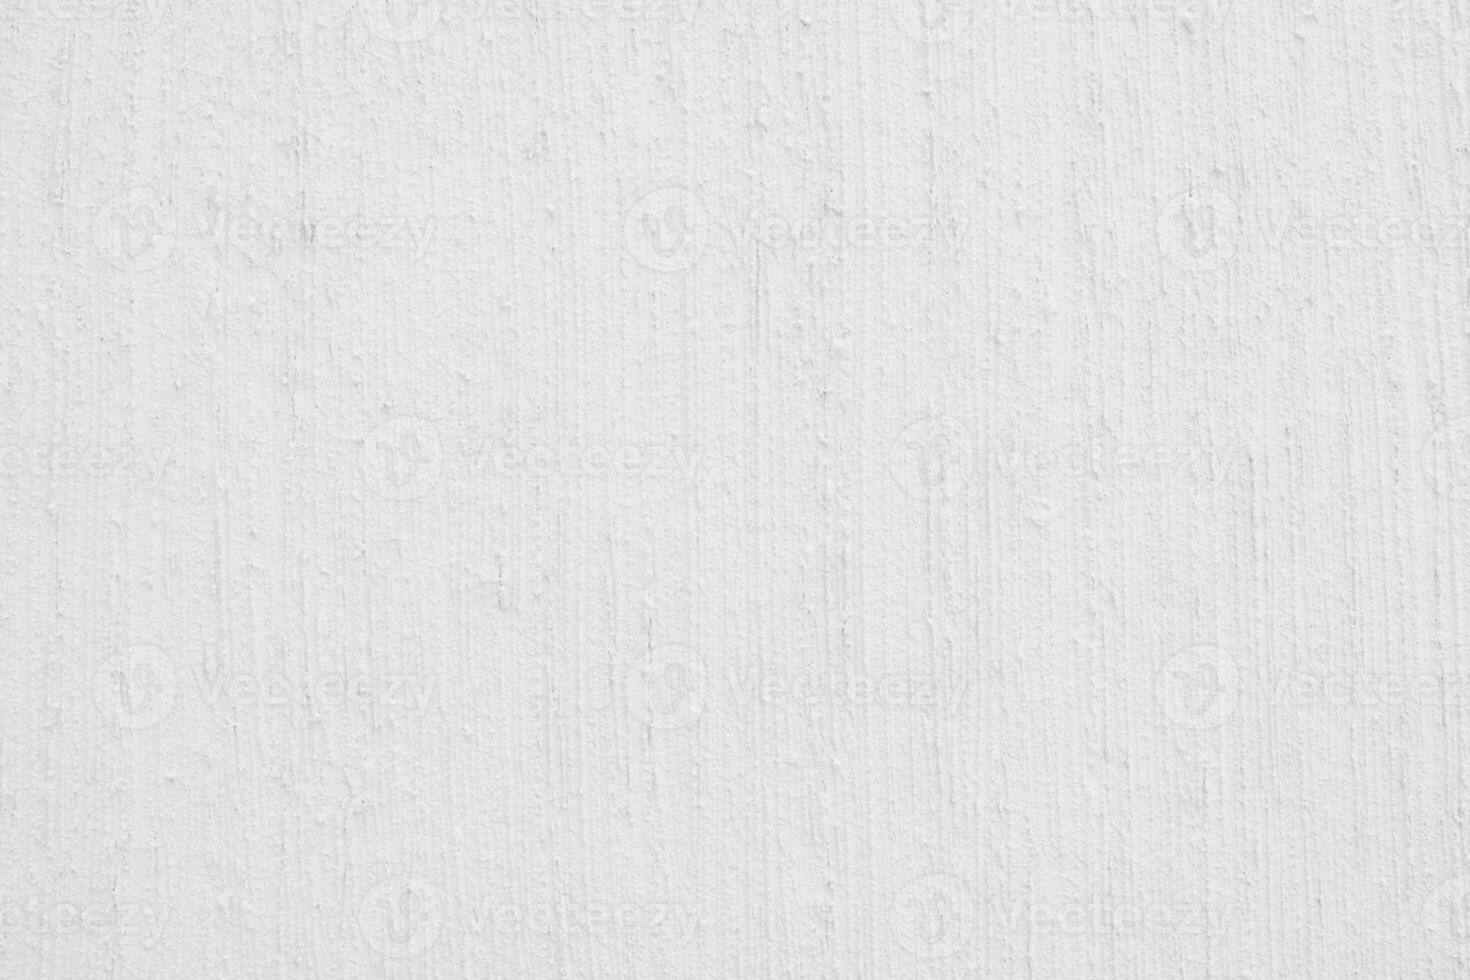 blanco cemento pared textura con natural modelo para antecedentes foto